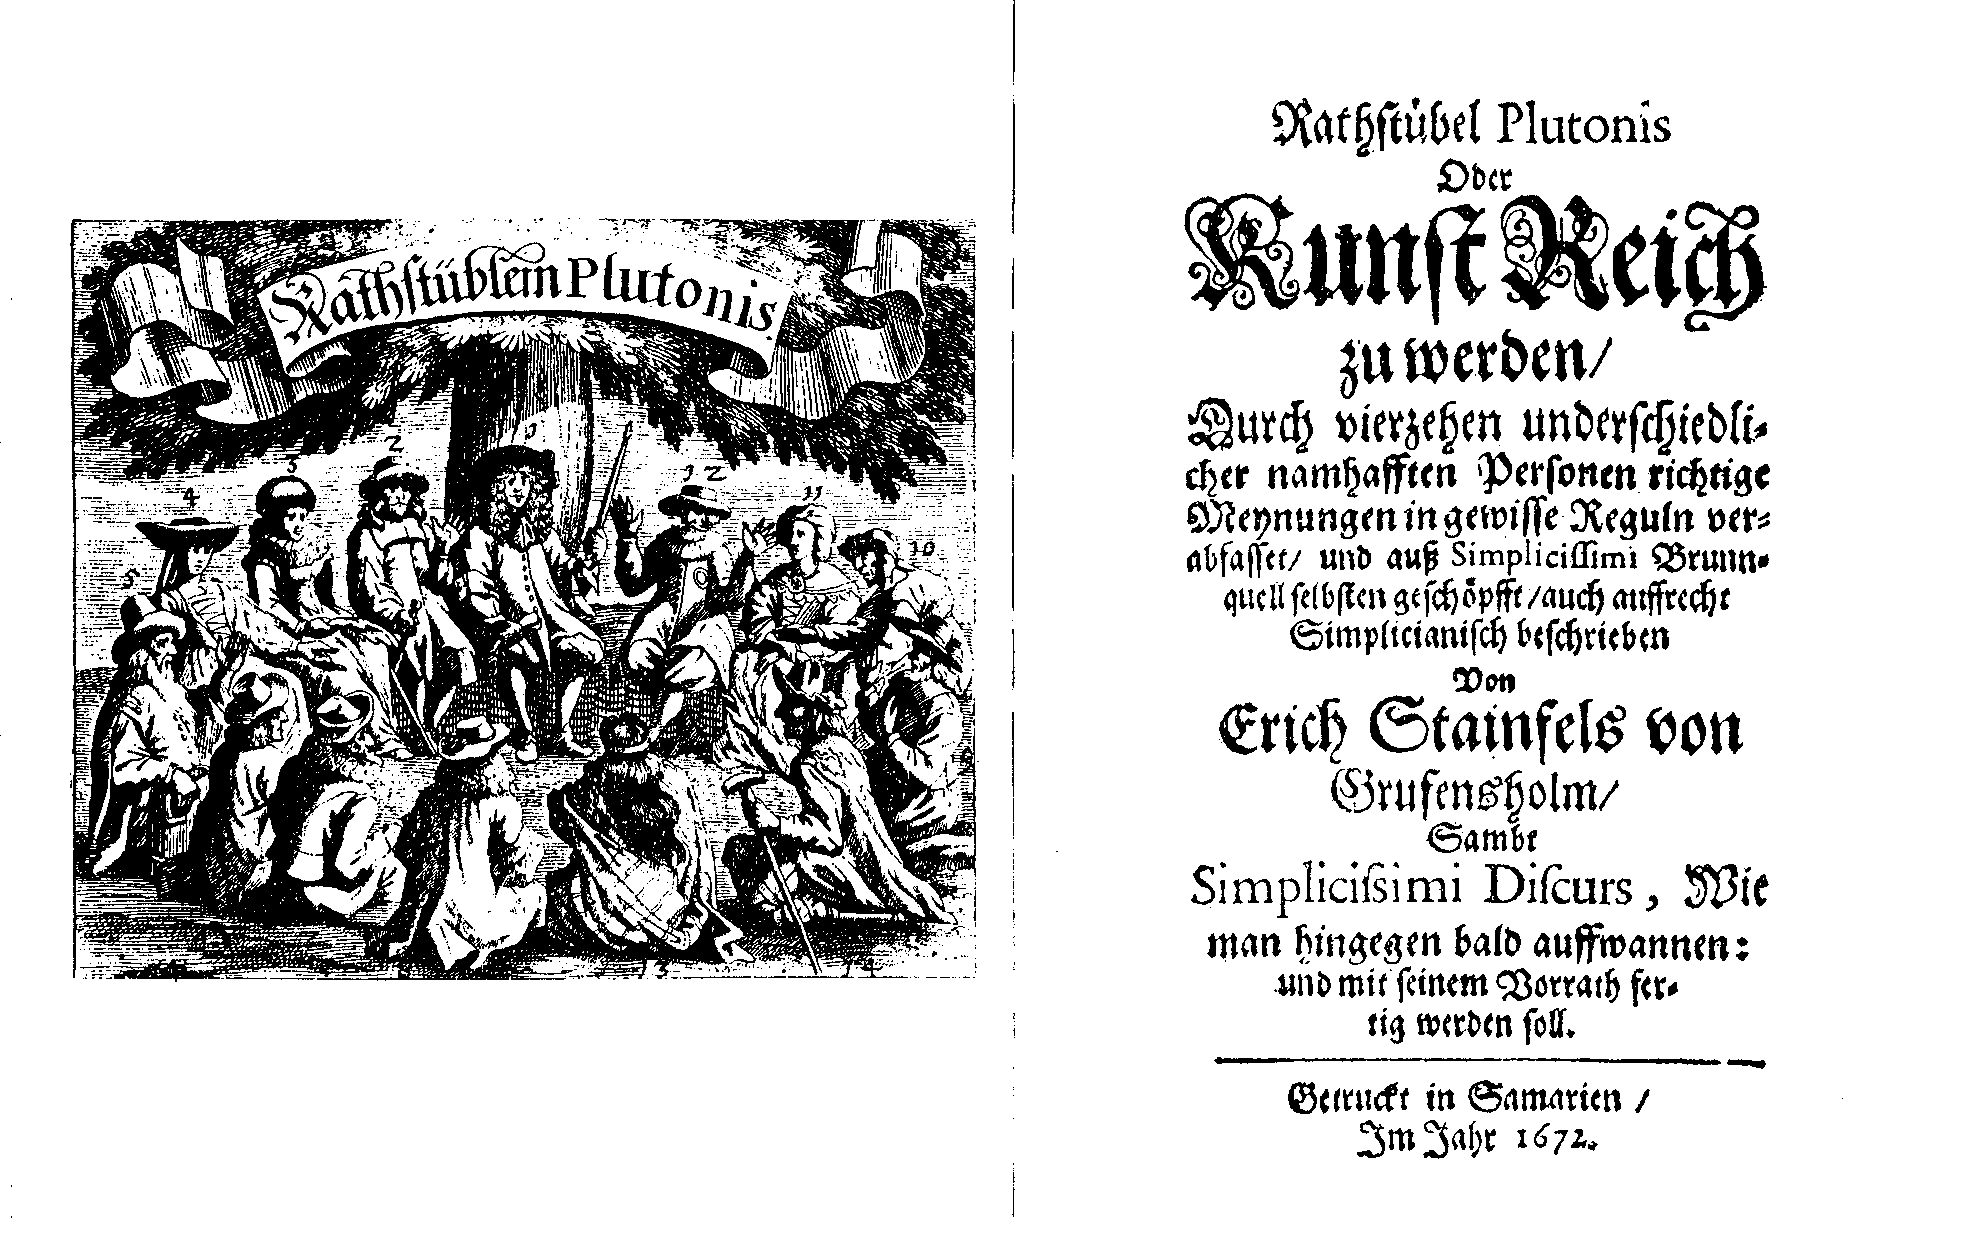 [H. J. Christoffel von Grimmelshausen =] Erich Stainfels von Grufensholm, Rathstübel Plutonis oder Kunst reich zu werden (Samarien, 1672).